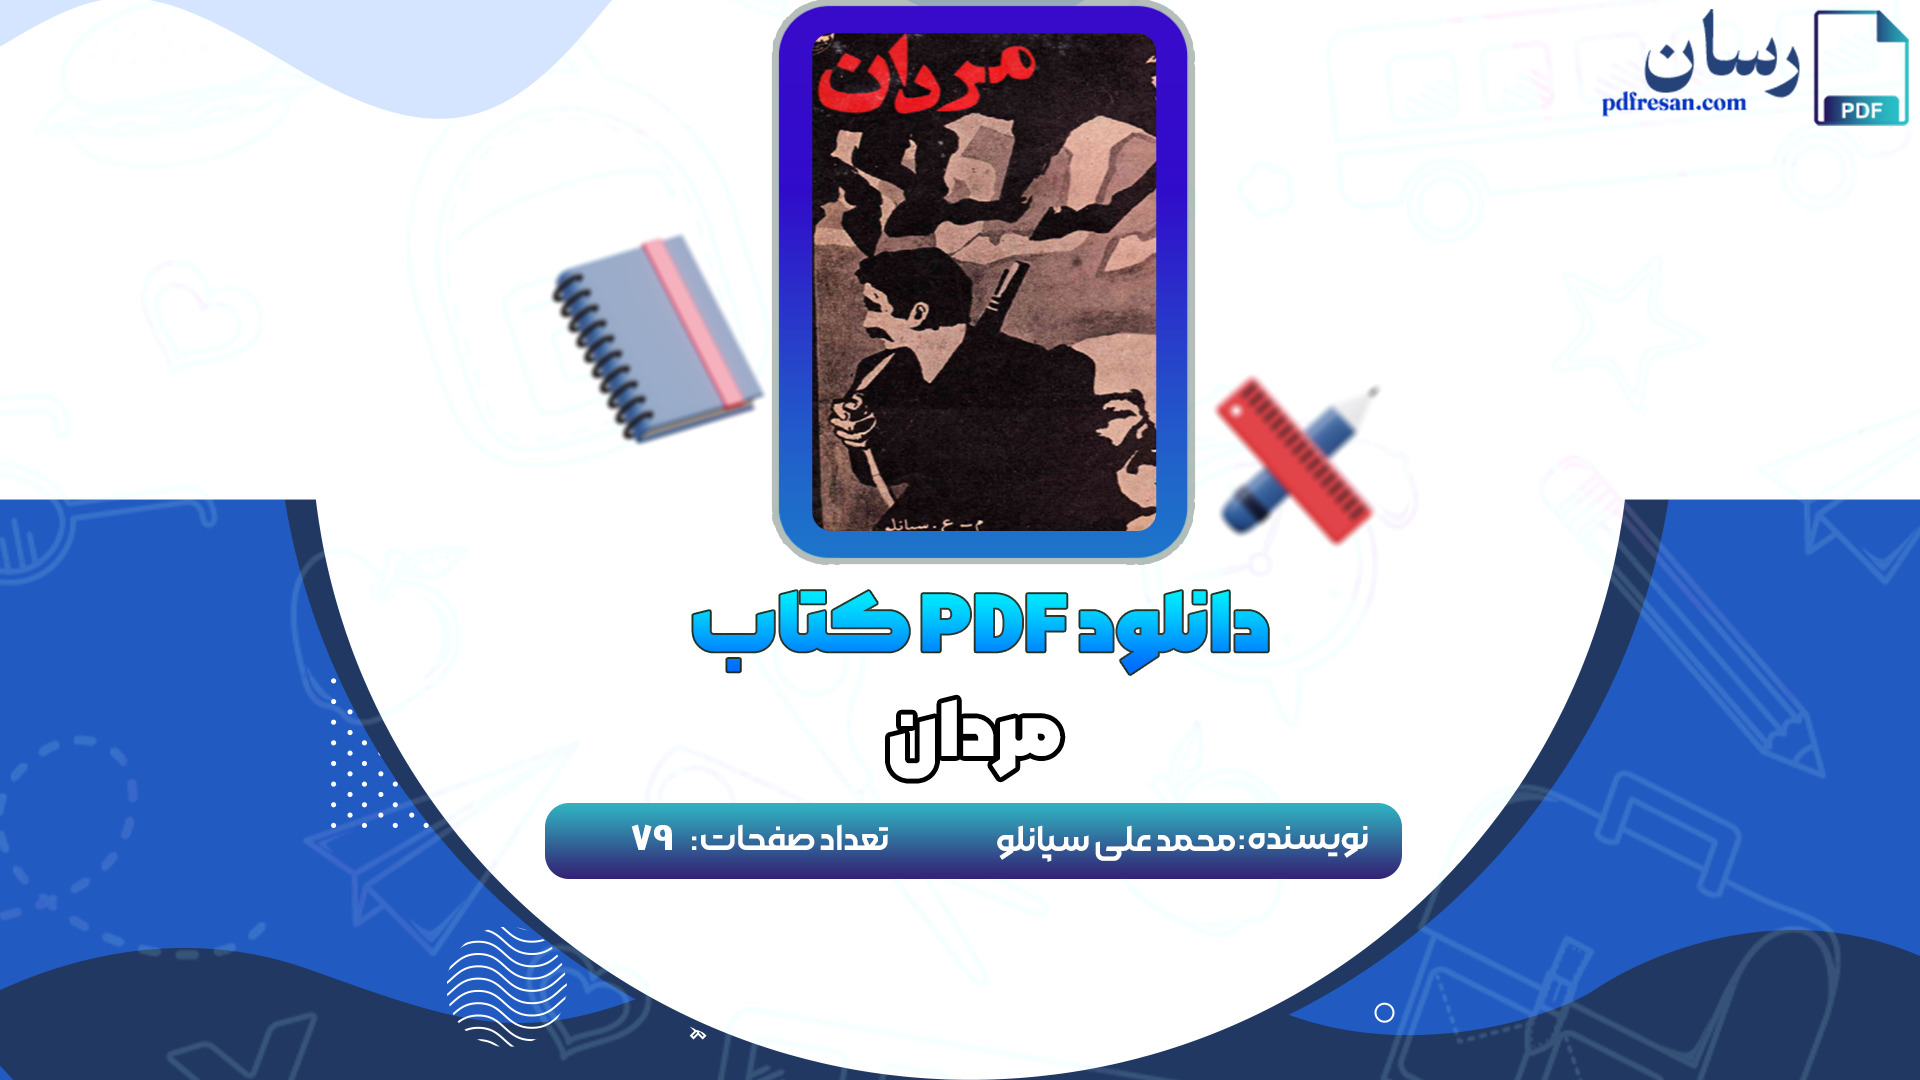 دانلود کتاب مردان محمد علی سپانلو PDF